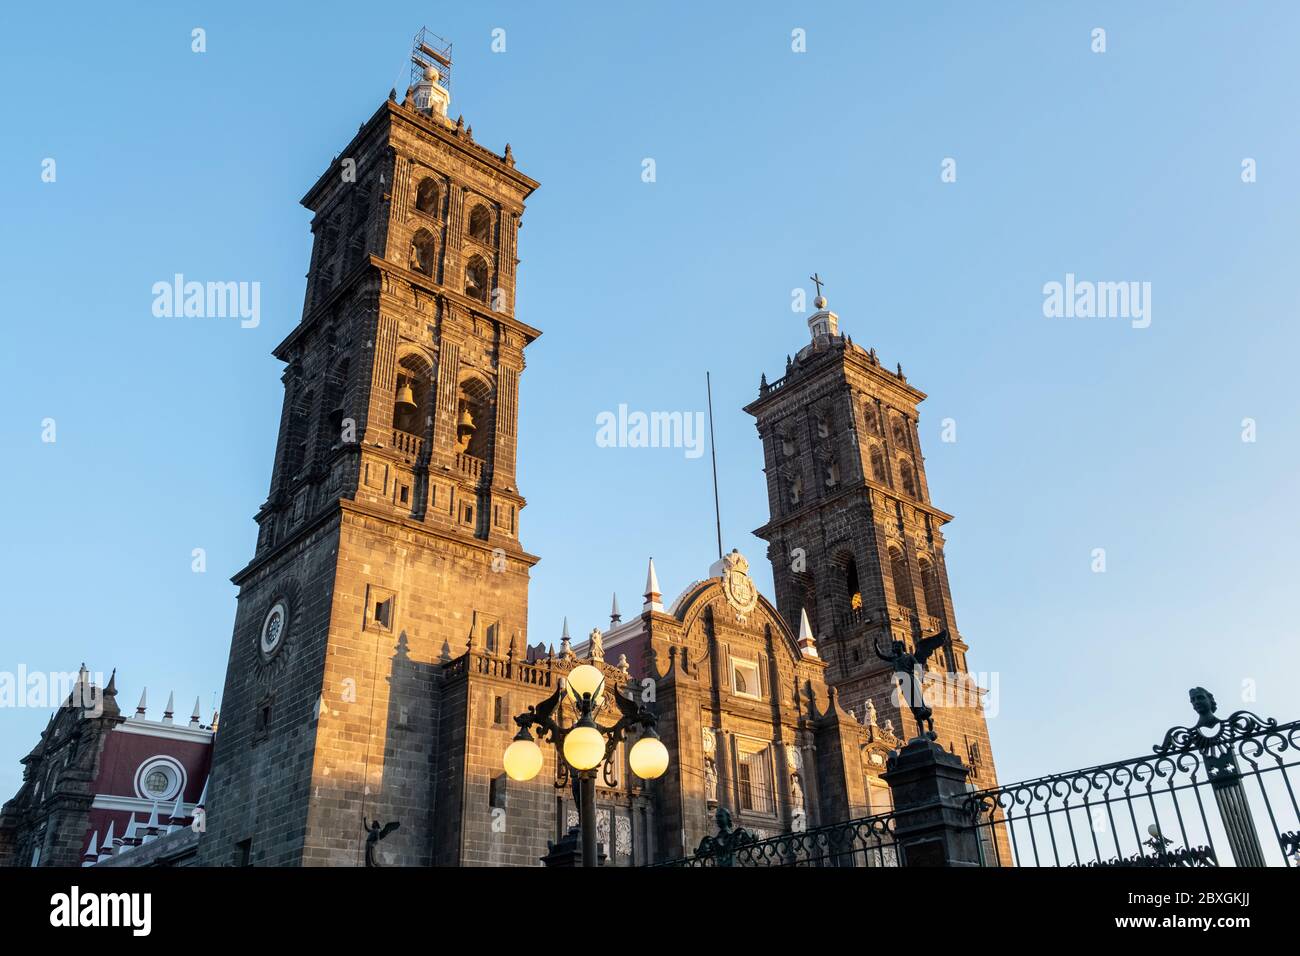 La cathédrale catholique romaine de Puebla, située sur la place centrale de la ville, s'appelle le Zocalo de Puebla, au Mexique. Banque D'Images